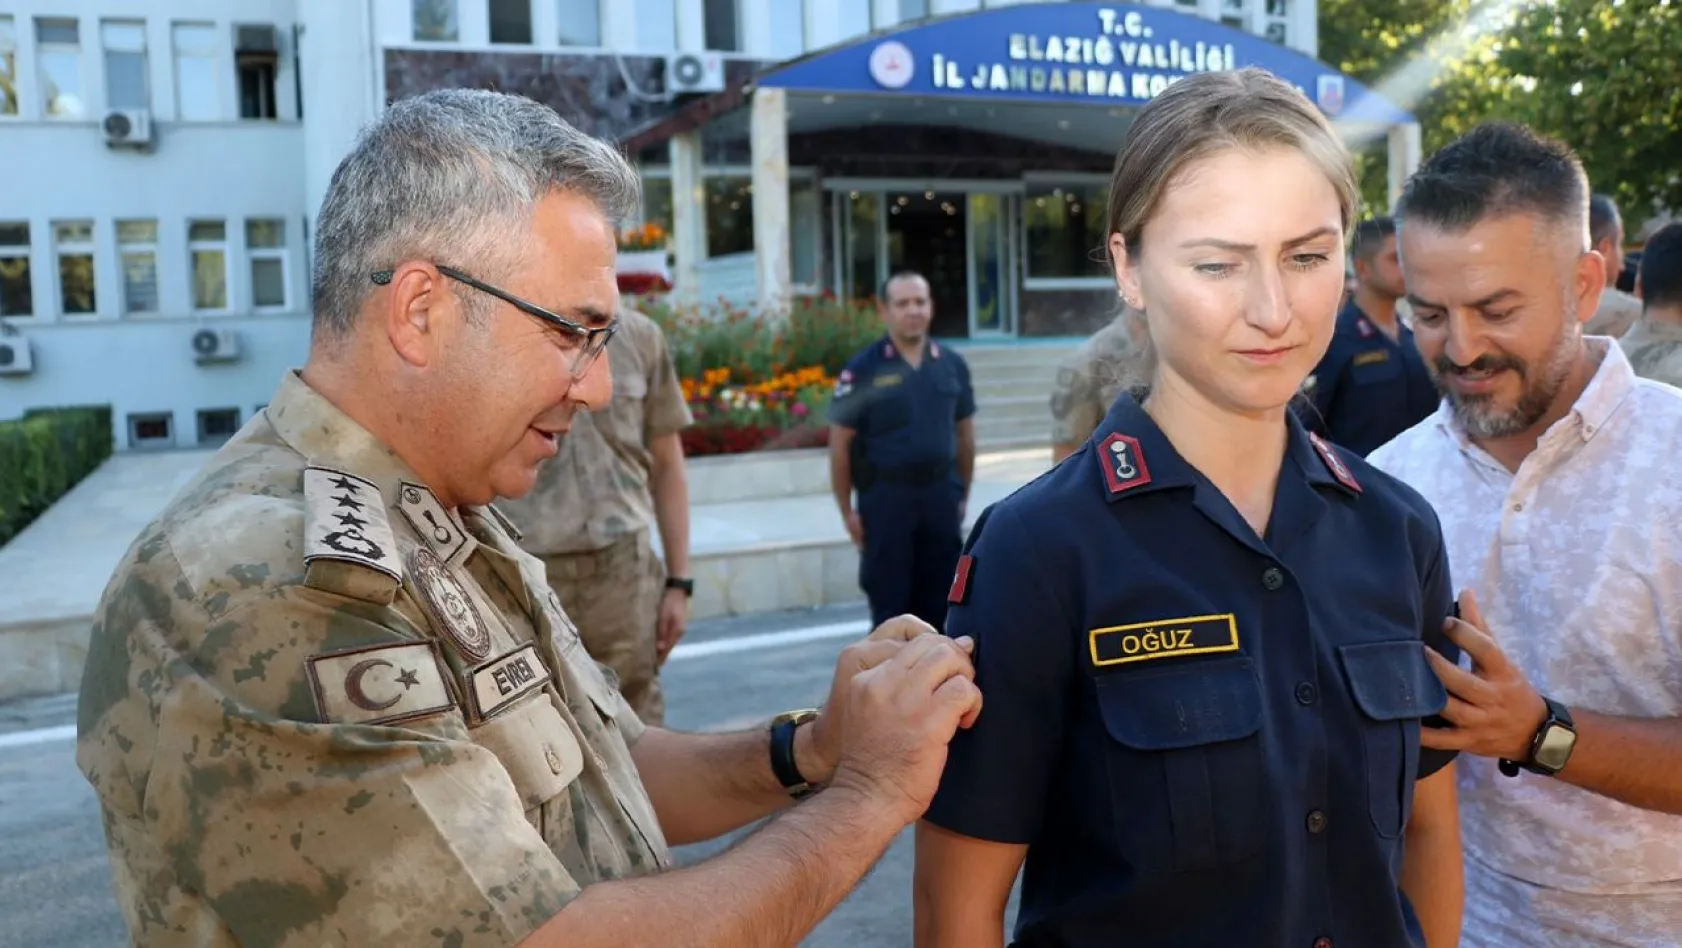 İl Jandarma Komutanlığında rütbe terfi töreni